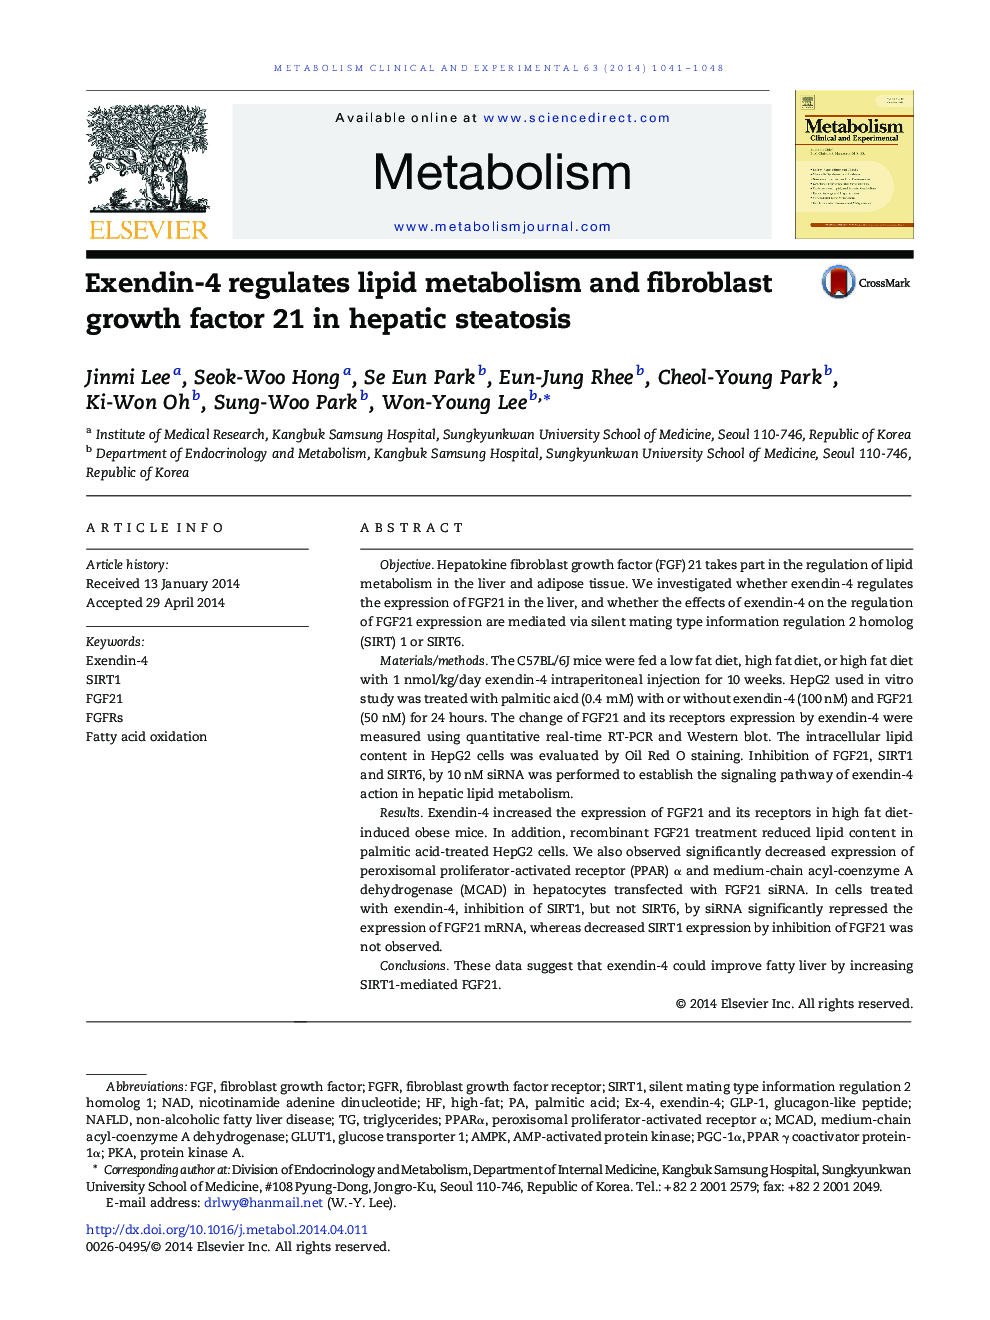 Exendin-4 regulates lipid metabolism and fibroblast growth factor 21 in hepatic steatosis